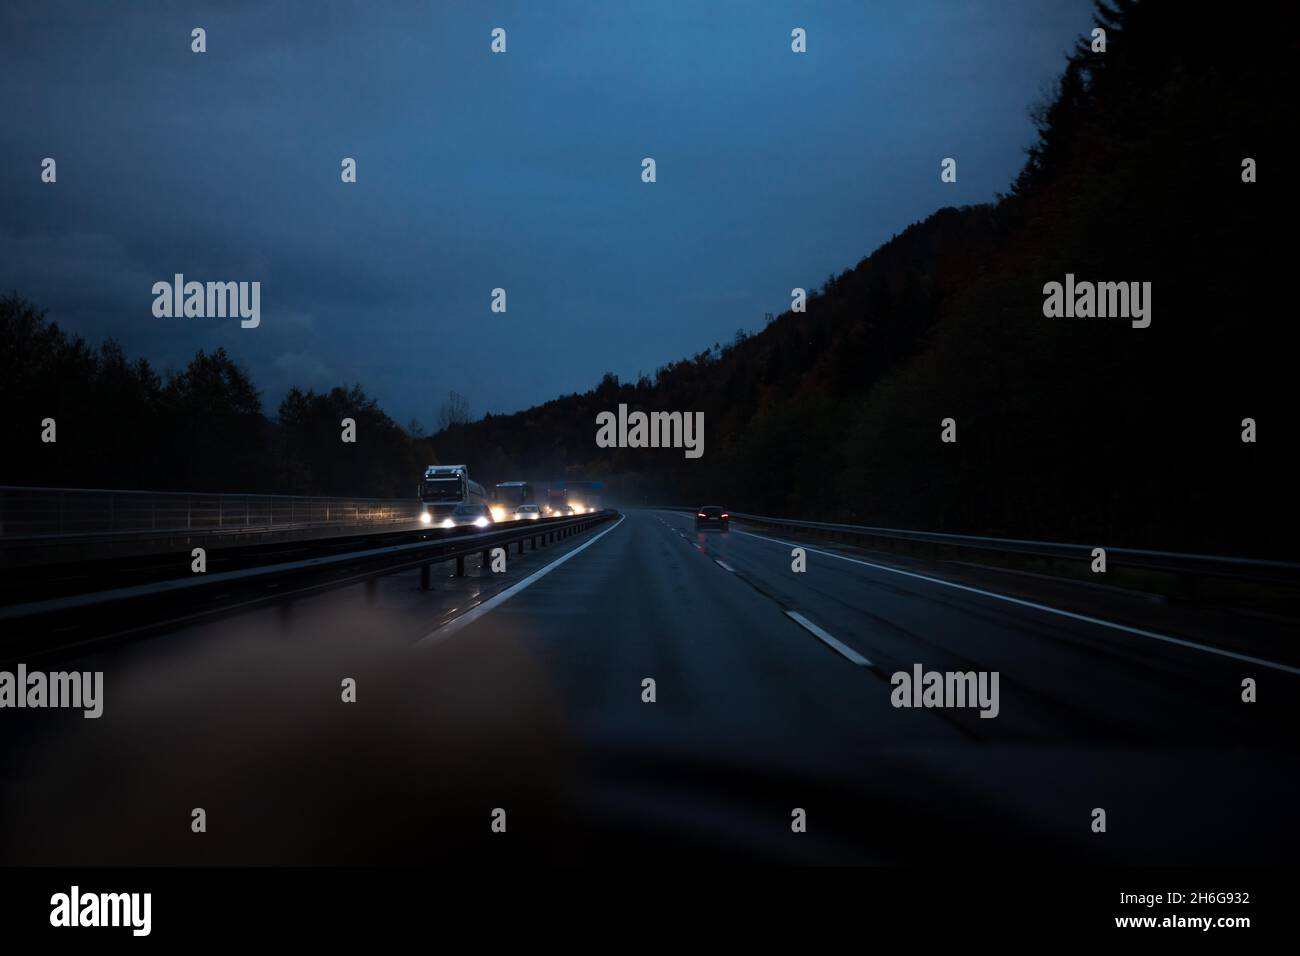 la guida notturna mostra una scarsa visibilità in prima persona Foto Stock